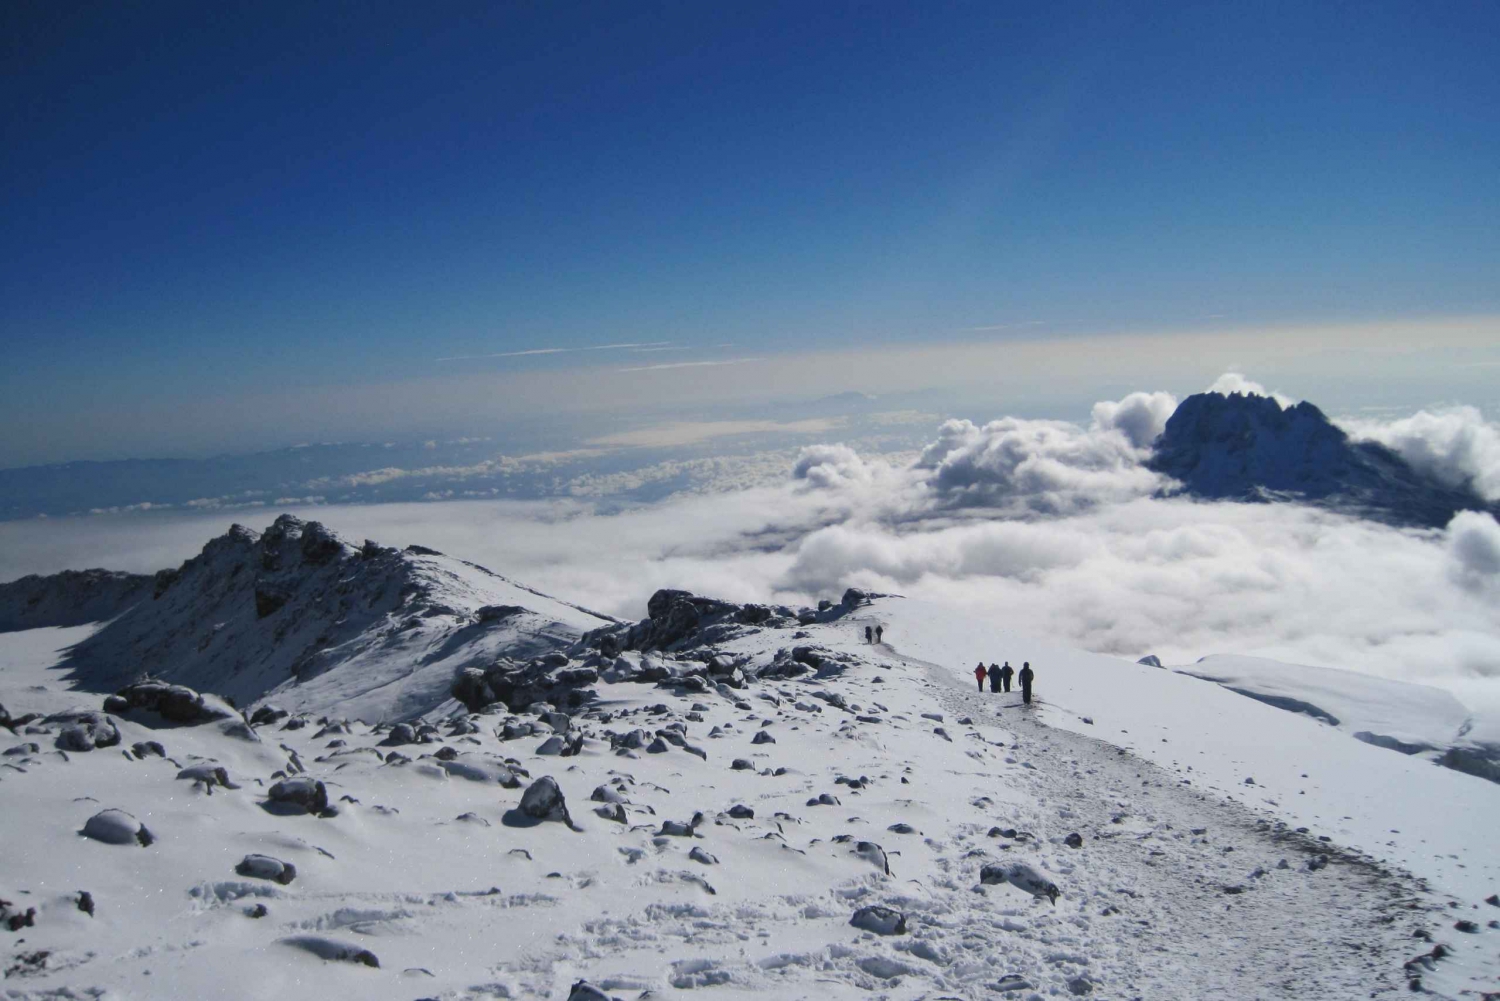 Escalar o Kilimanjaro pela Rota Lemosho por 7 dias